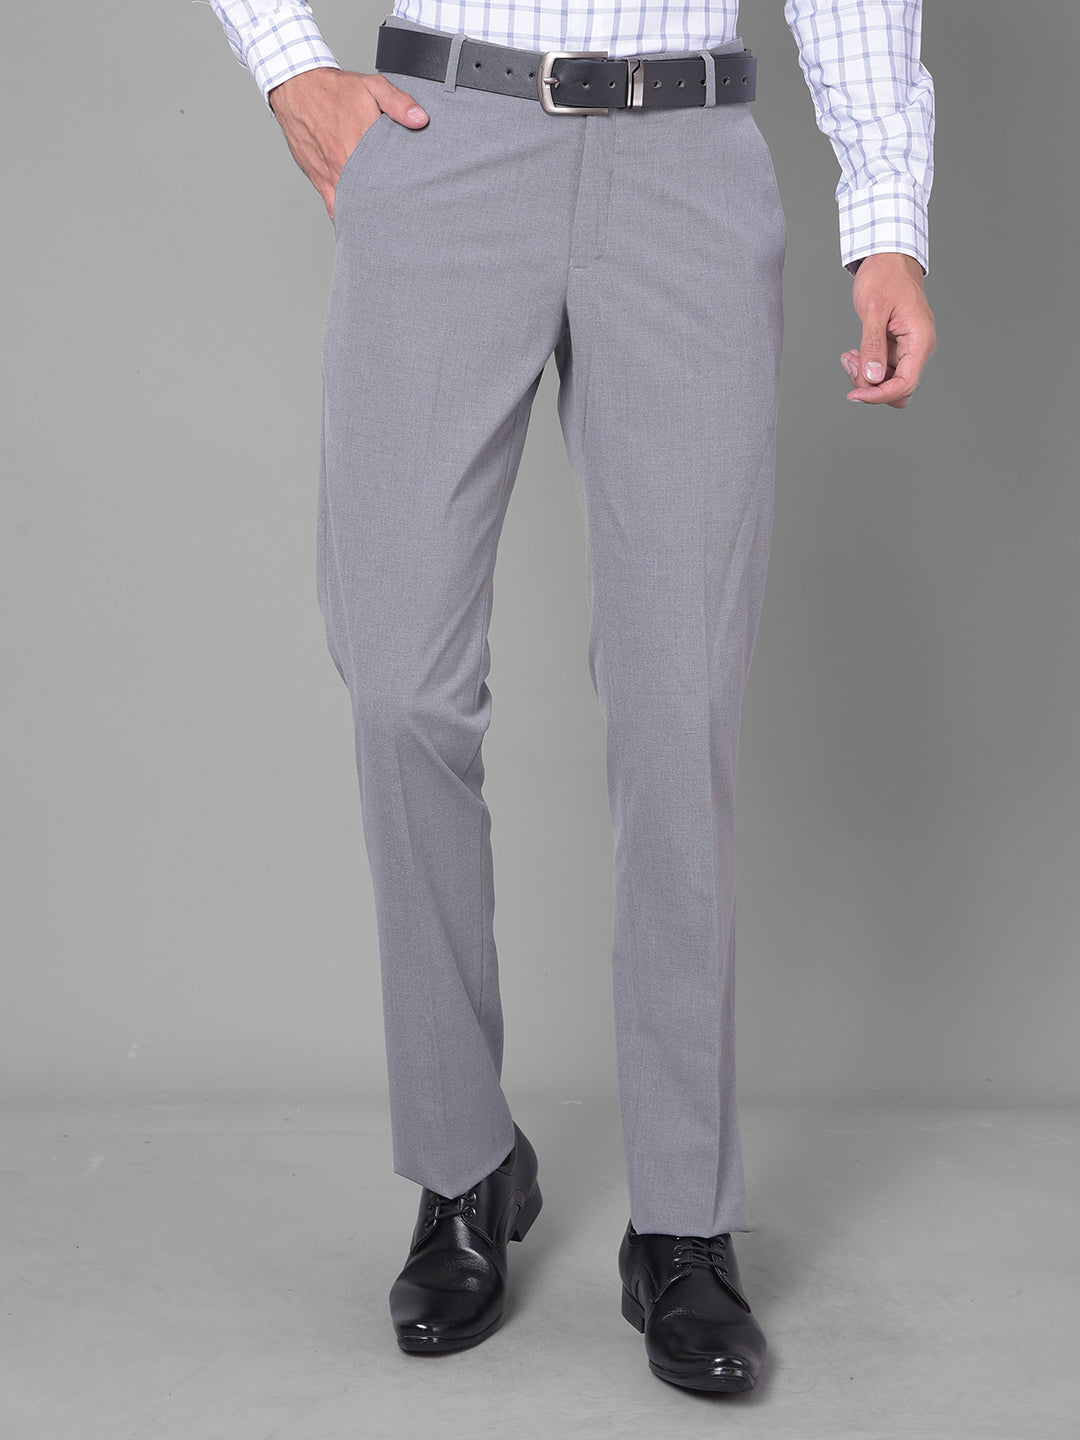 Buy Grey Trousers  Pants for Men by Metal Online  Ajiocom